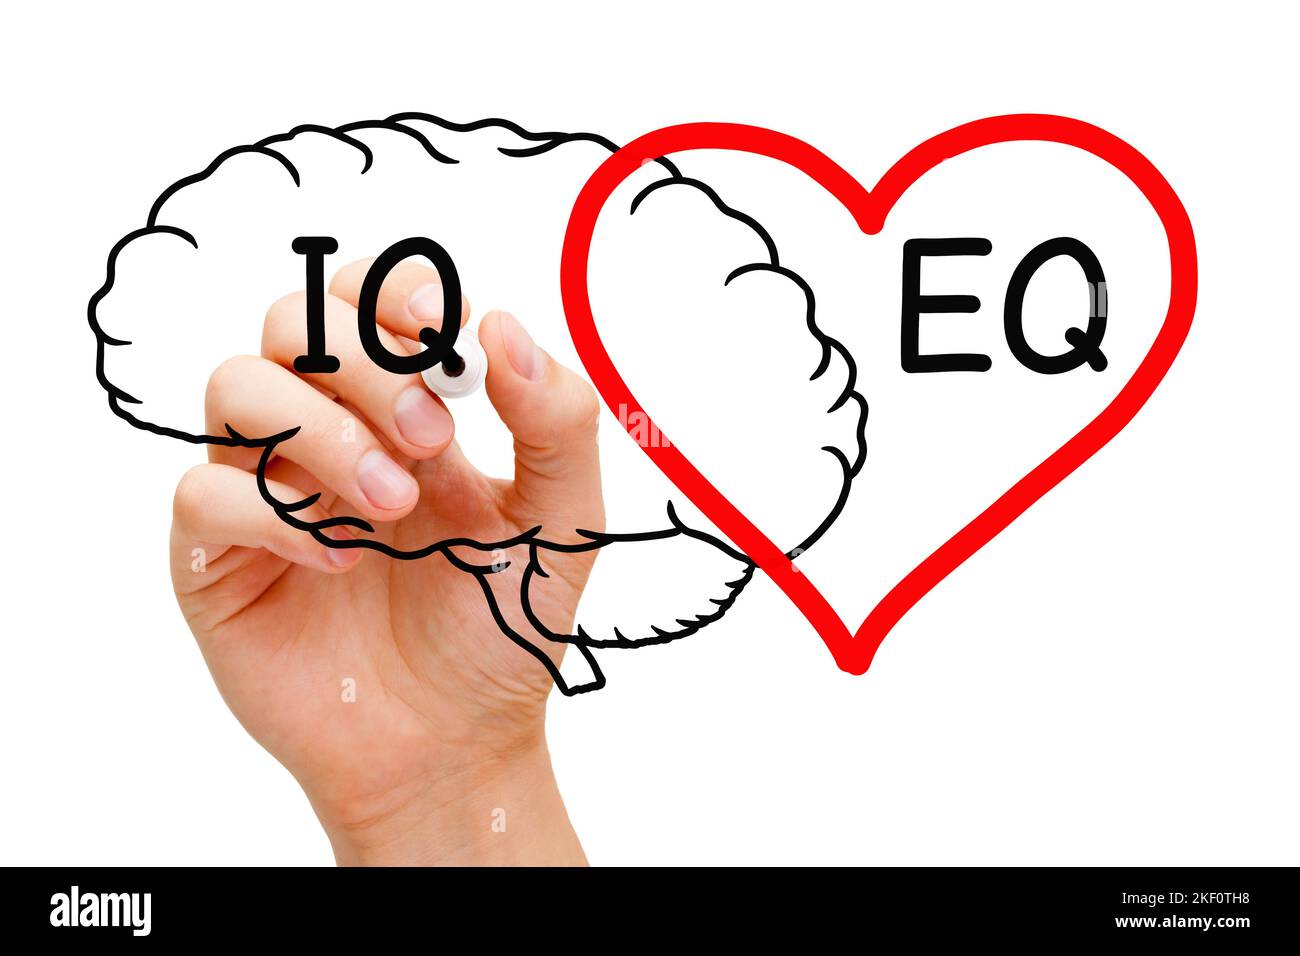 Disegnare a mano un concetto di cervello e cuore sul quoziente intelligenza IQ e intelligenza emotiva EQ. Foto Stock